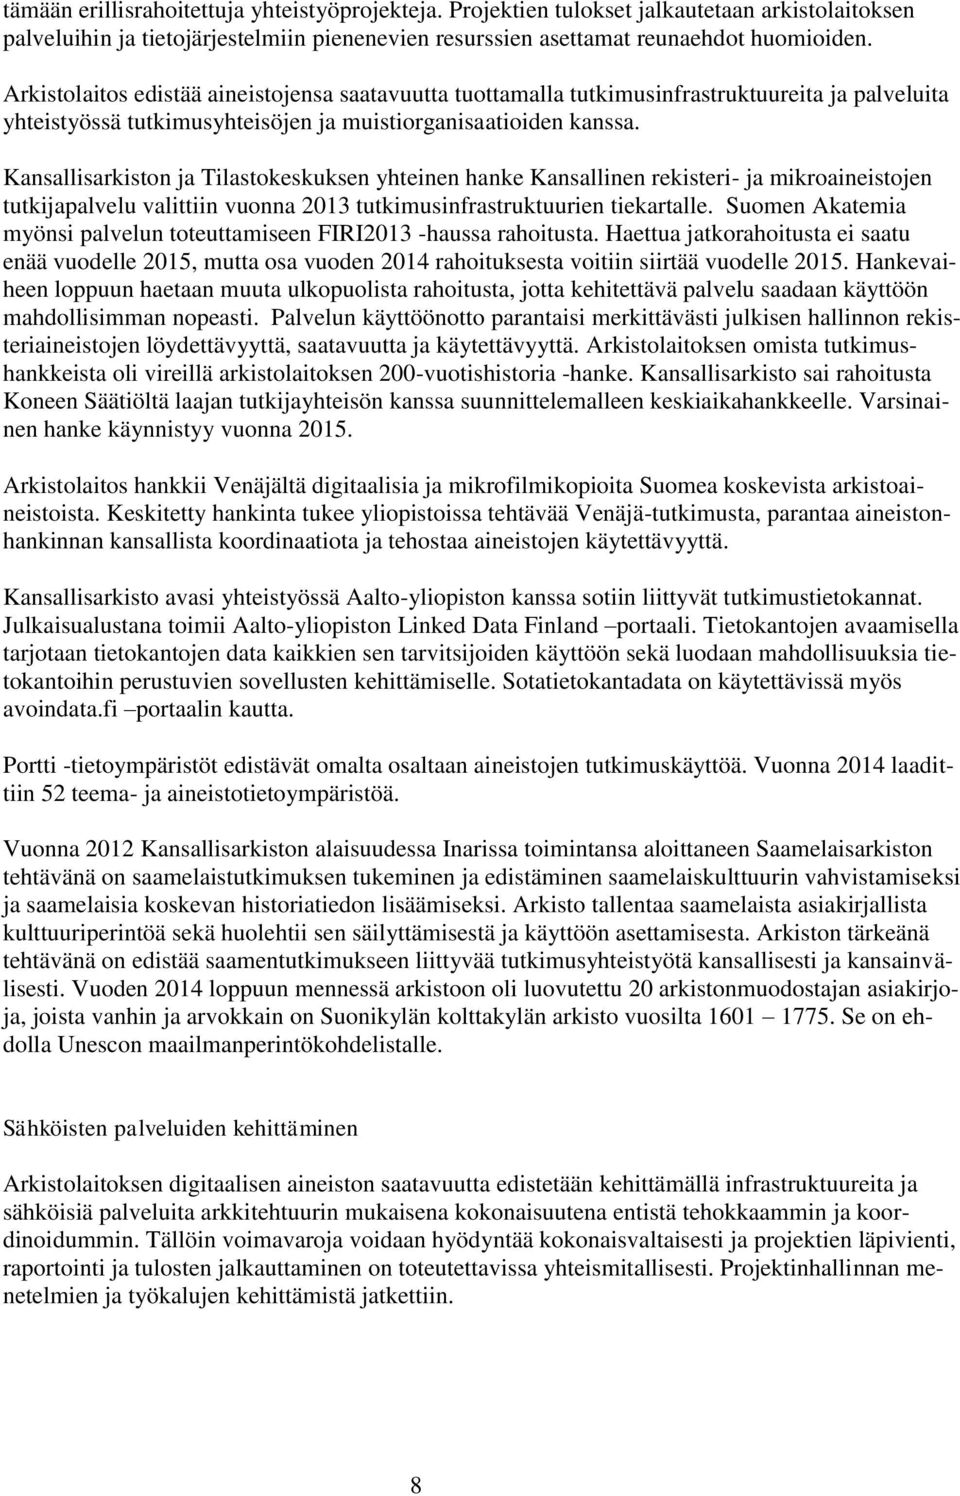 Kansallisarkiston ja Tilastokeskuksen yhteinen hanke Kansallinen rekisteri- ja mikroaineistojen tutkijapalvelu valittiin vuonna 2013 tutkimusinfrastruktuurien tiekartalle.